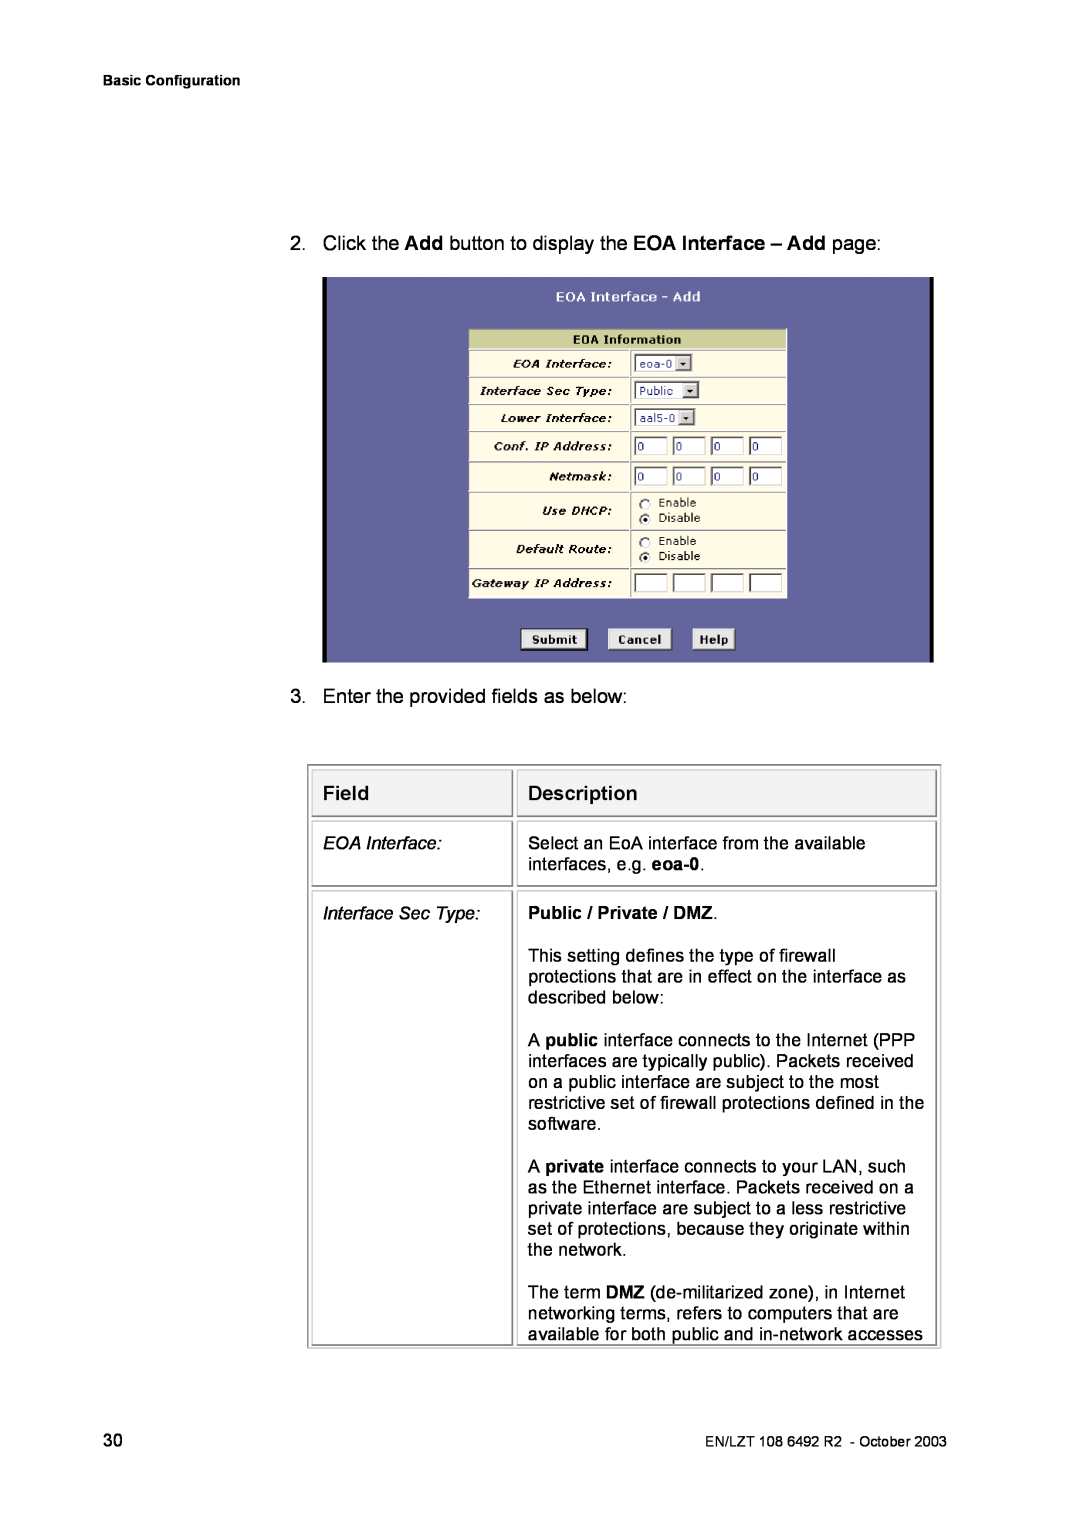 Garmin HM210DP/DI Field, Description, EOA Interface, Select an EoA interface from the available, interfaces, e.g. eoa-0 